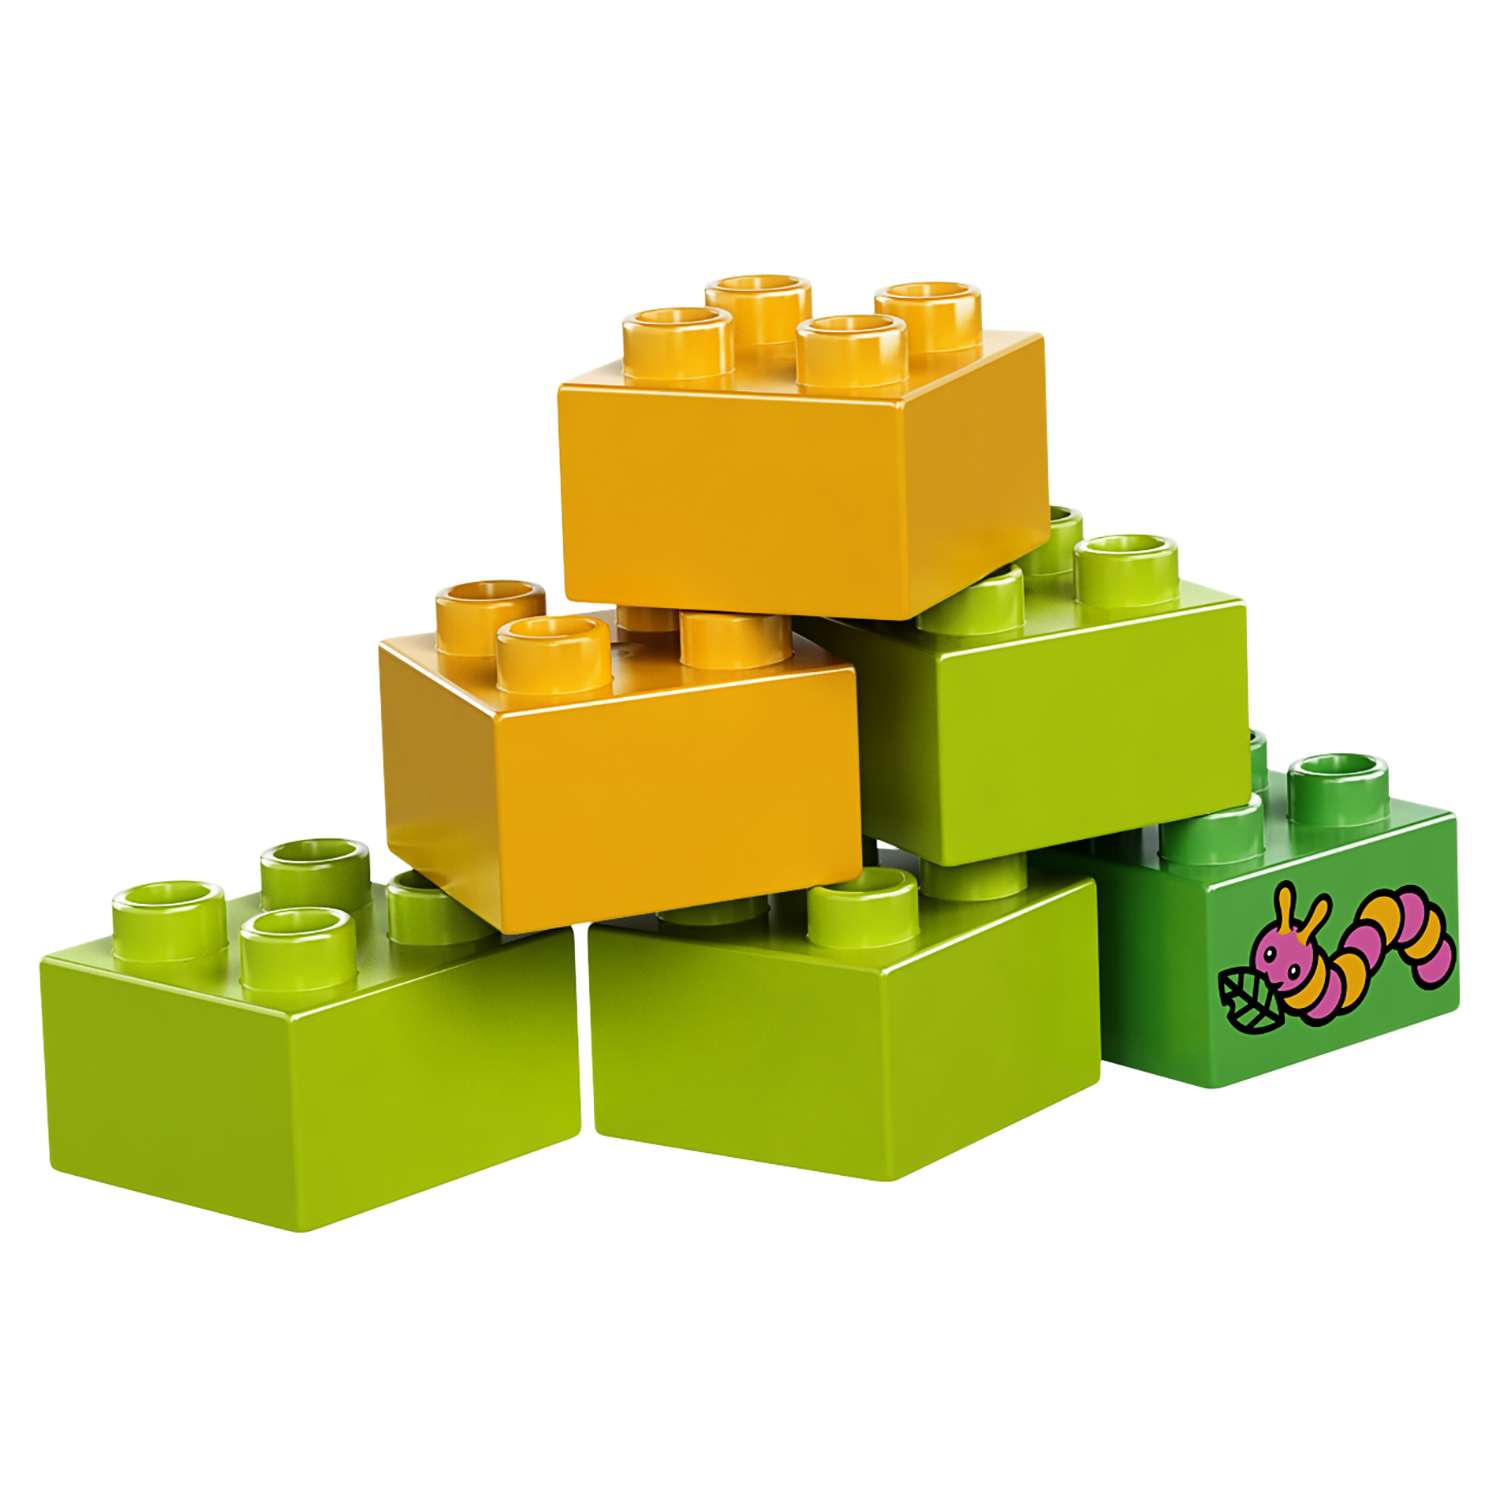 Конструктор LEGO DUPLO Town Сельскохозяйственный трактор (10524) - фото 14